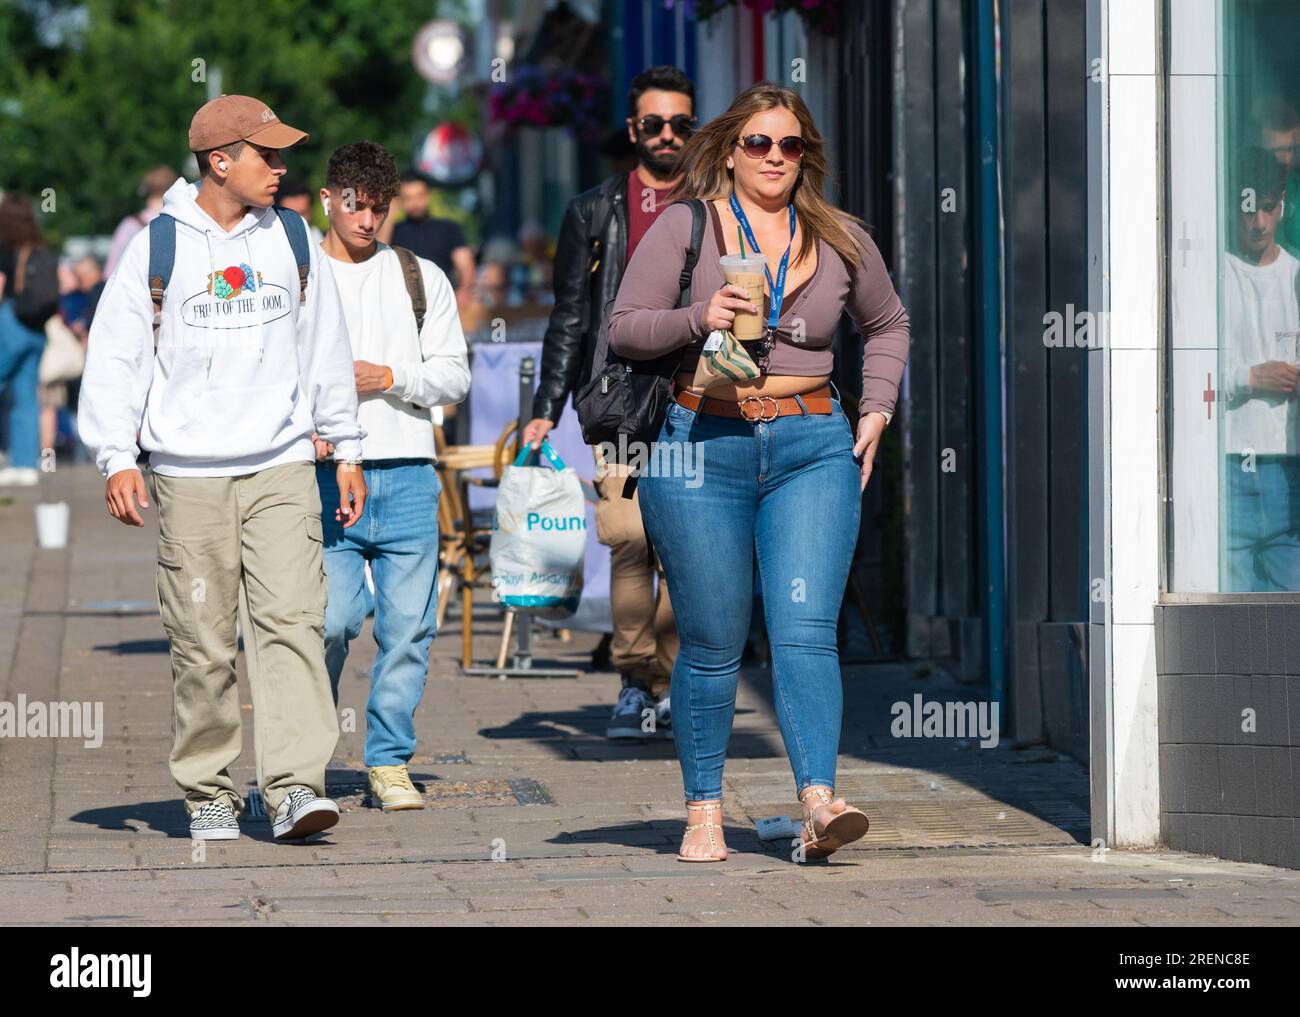 Hübsche junge Frau in Jeans, modisch gekleidet, in der geschäftigen Stadt unterwegs, mit einem Mitnahmegetränk, Schultertasche, im Sommer in Großbritannien. Fußgänger. Stockfoto